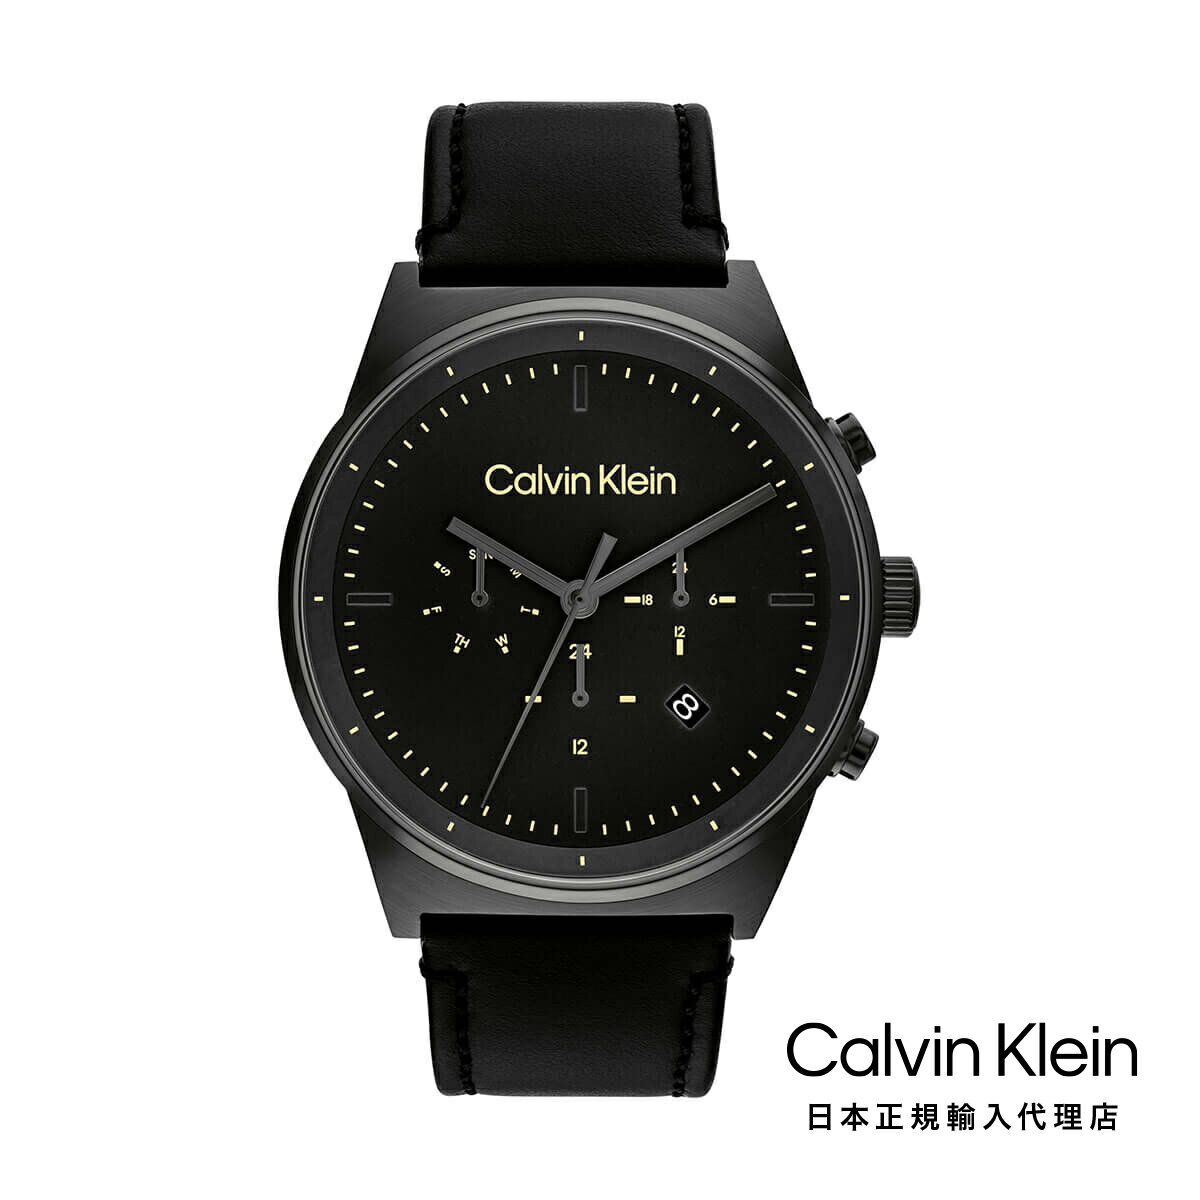 Calvin Klein / カルバンクライン インプレッシブ - 44MM ブラック ダイヤル IP グレー ケース ブラック レザー ストラップ